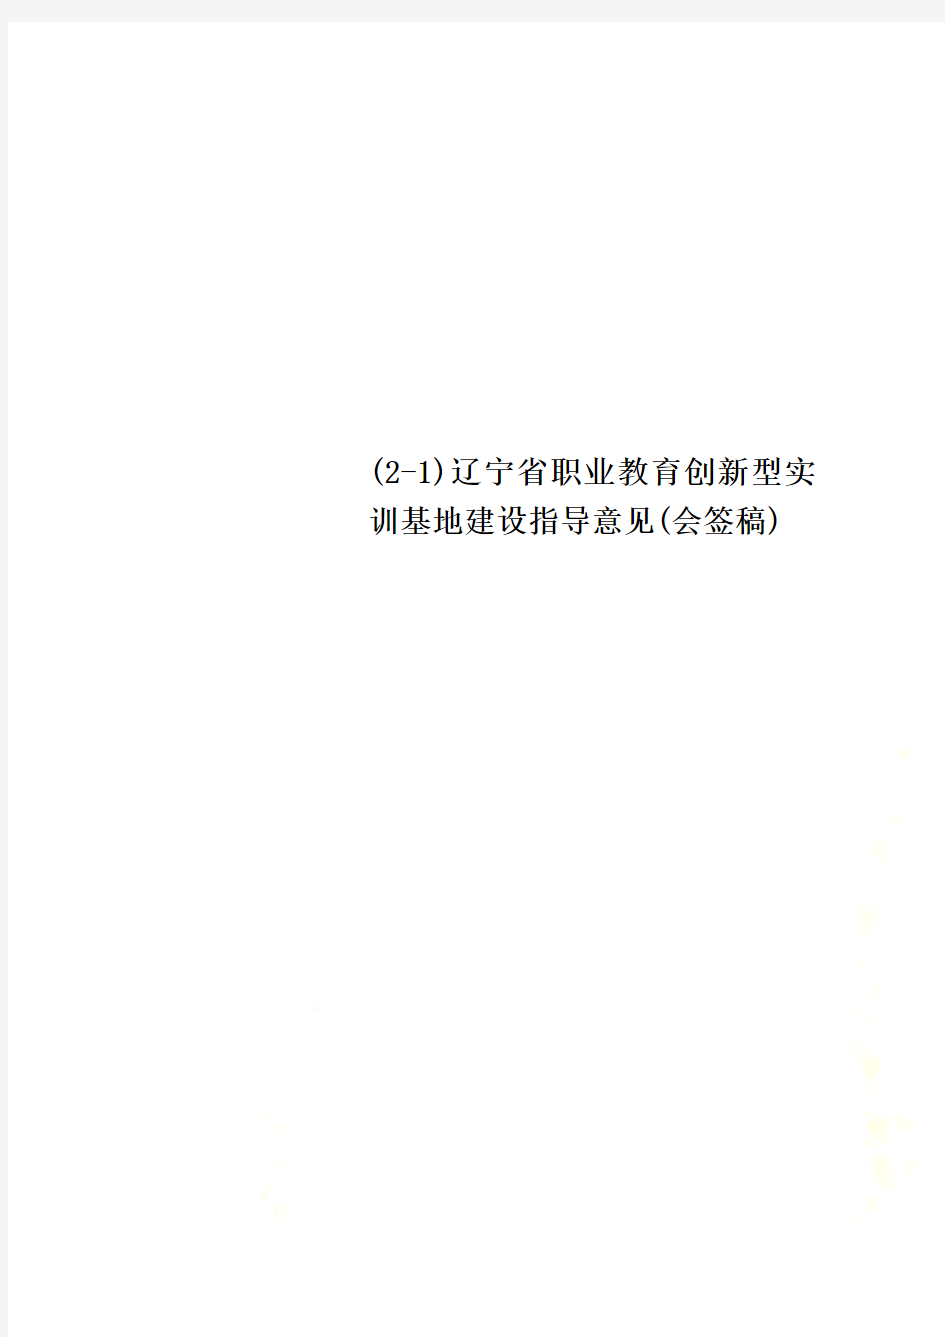 (2-1)辽宁省职业教育创新型实训基地建设指导意见(会签稿)